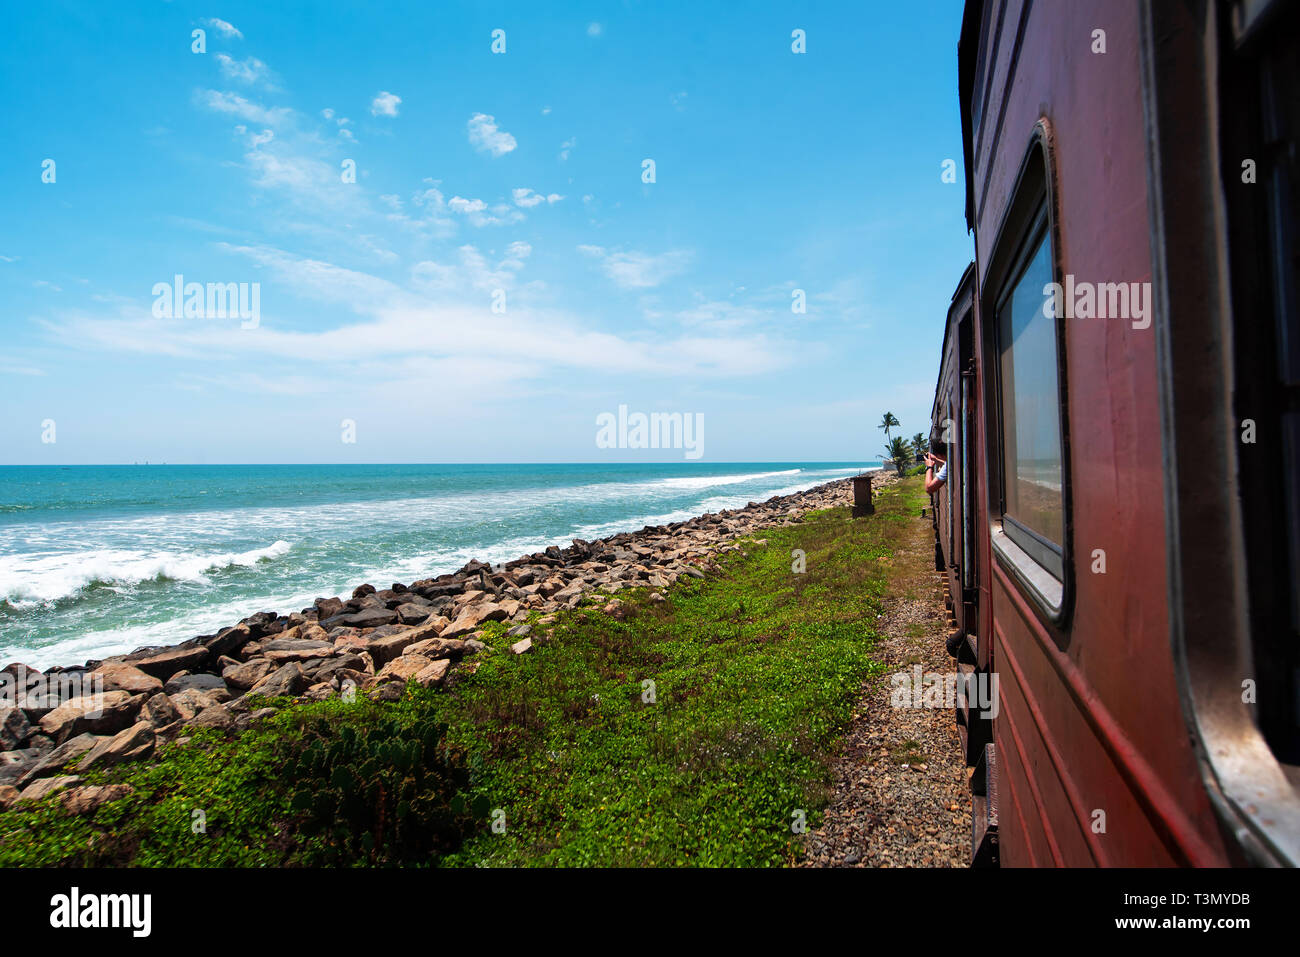 La vue panoramique du littoral au Sri Lanka Banque D'Images